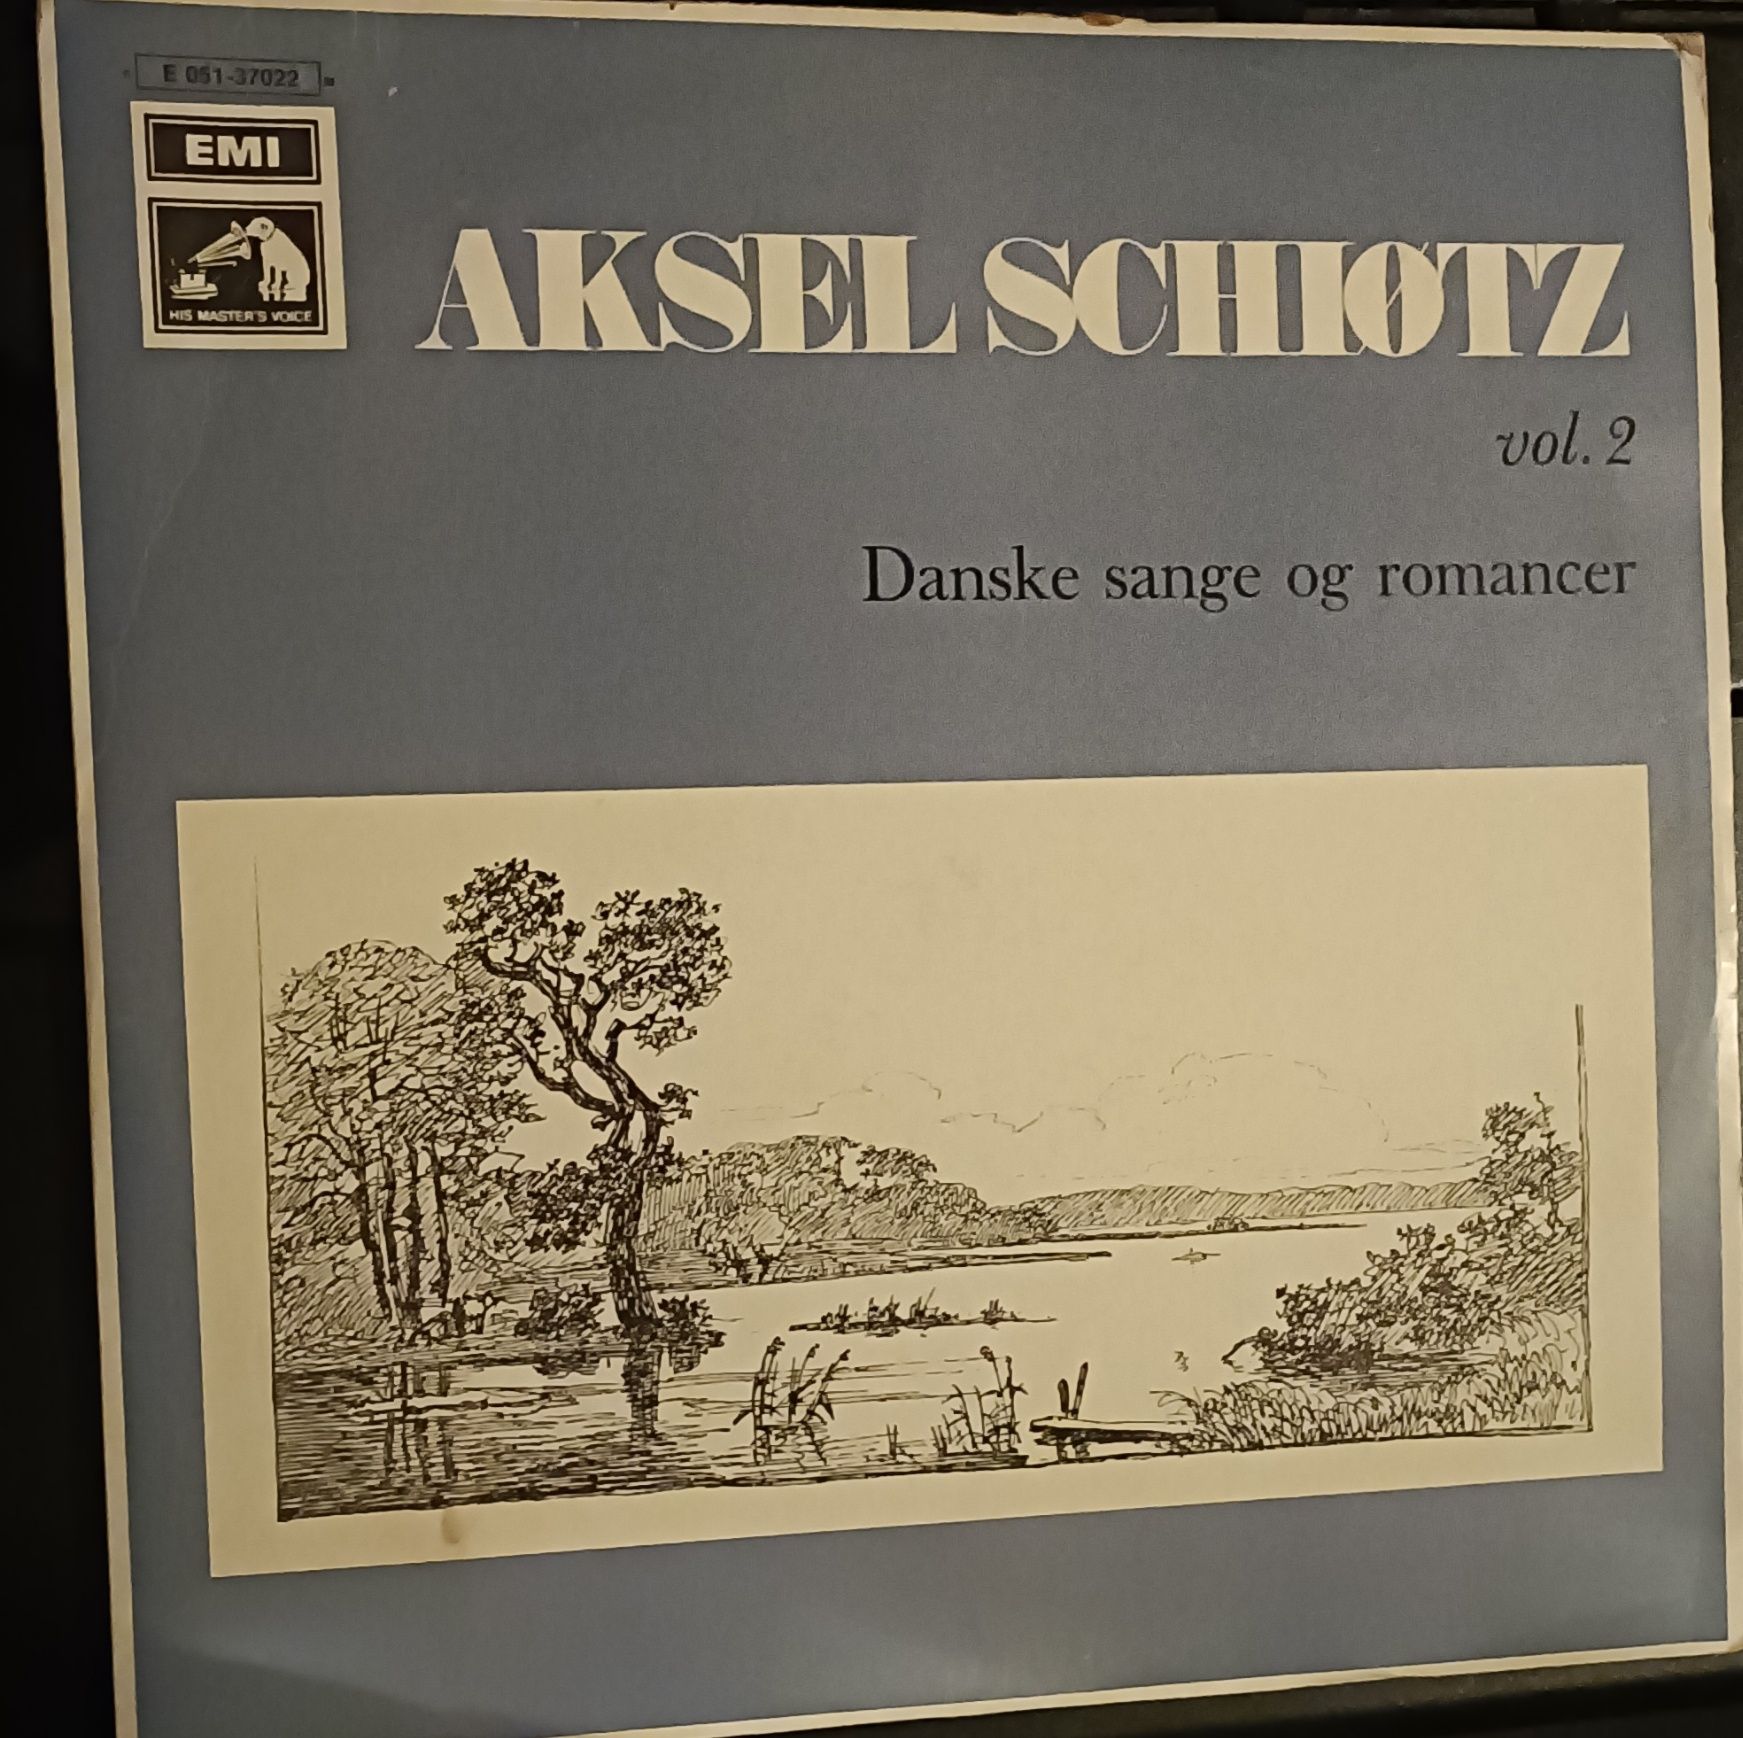 Aksel Schiotz vol .2 danske sange og romancer winyl PROMOCJA